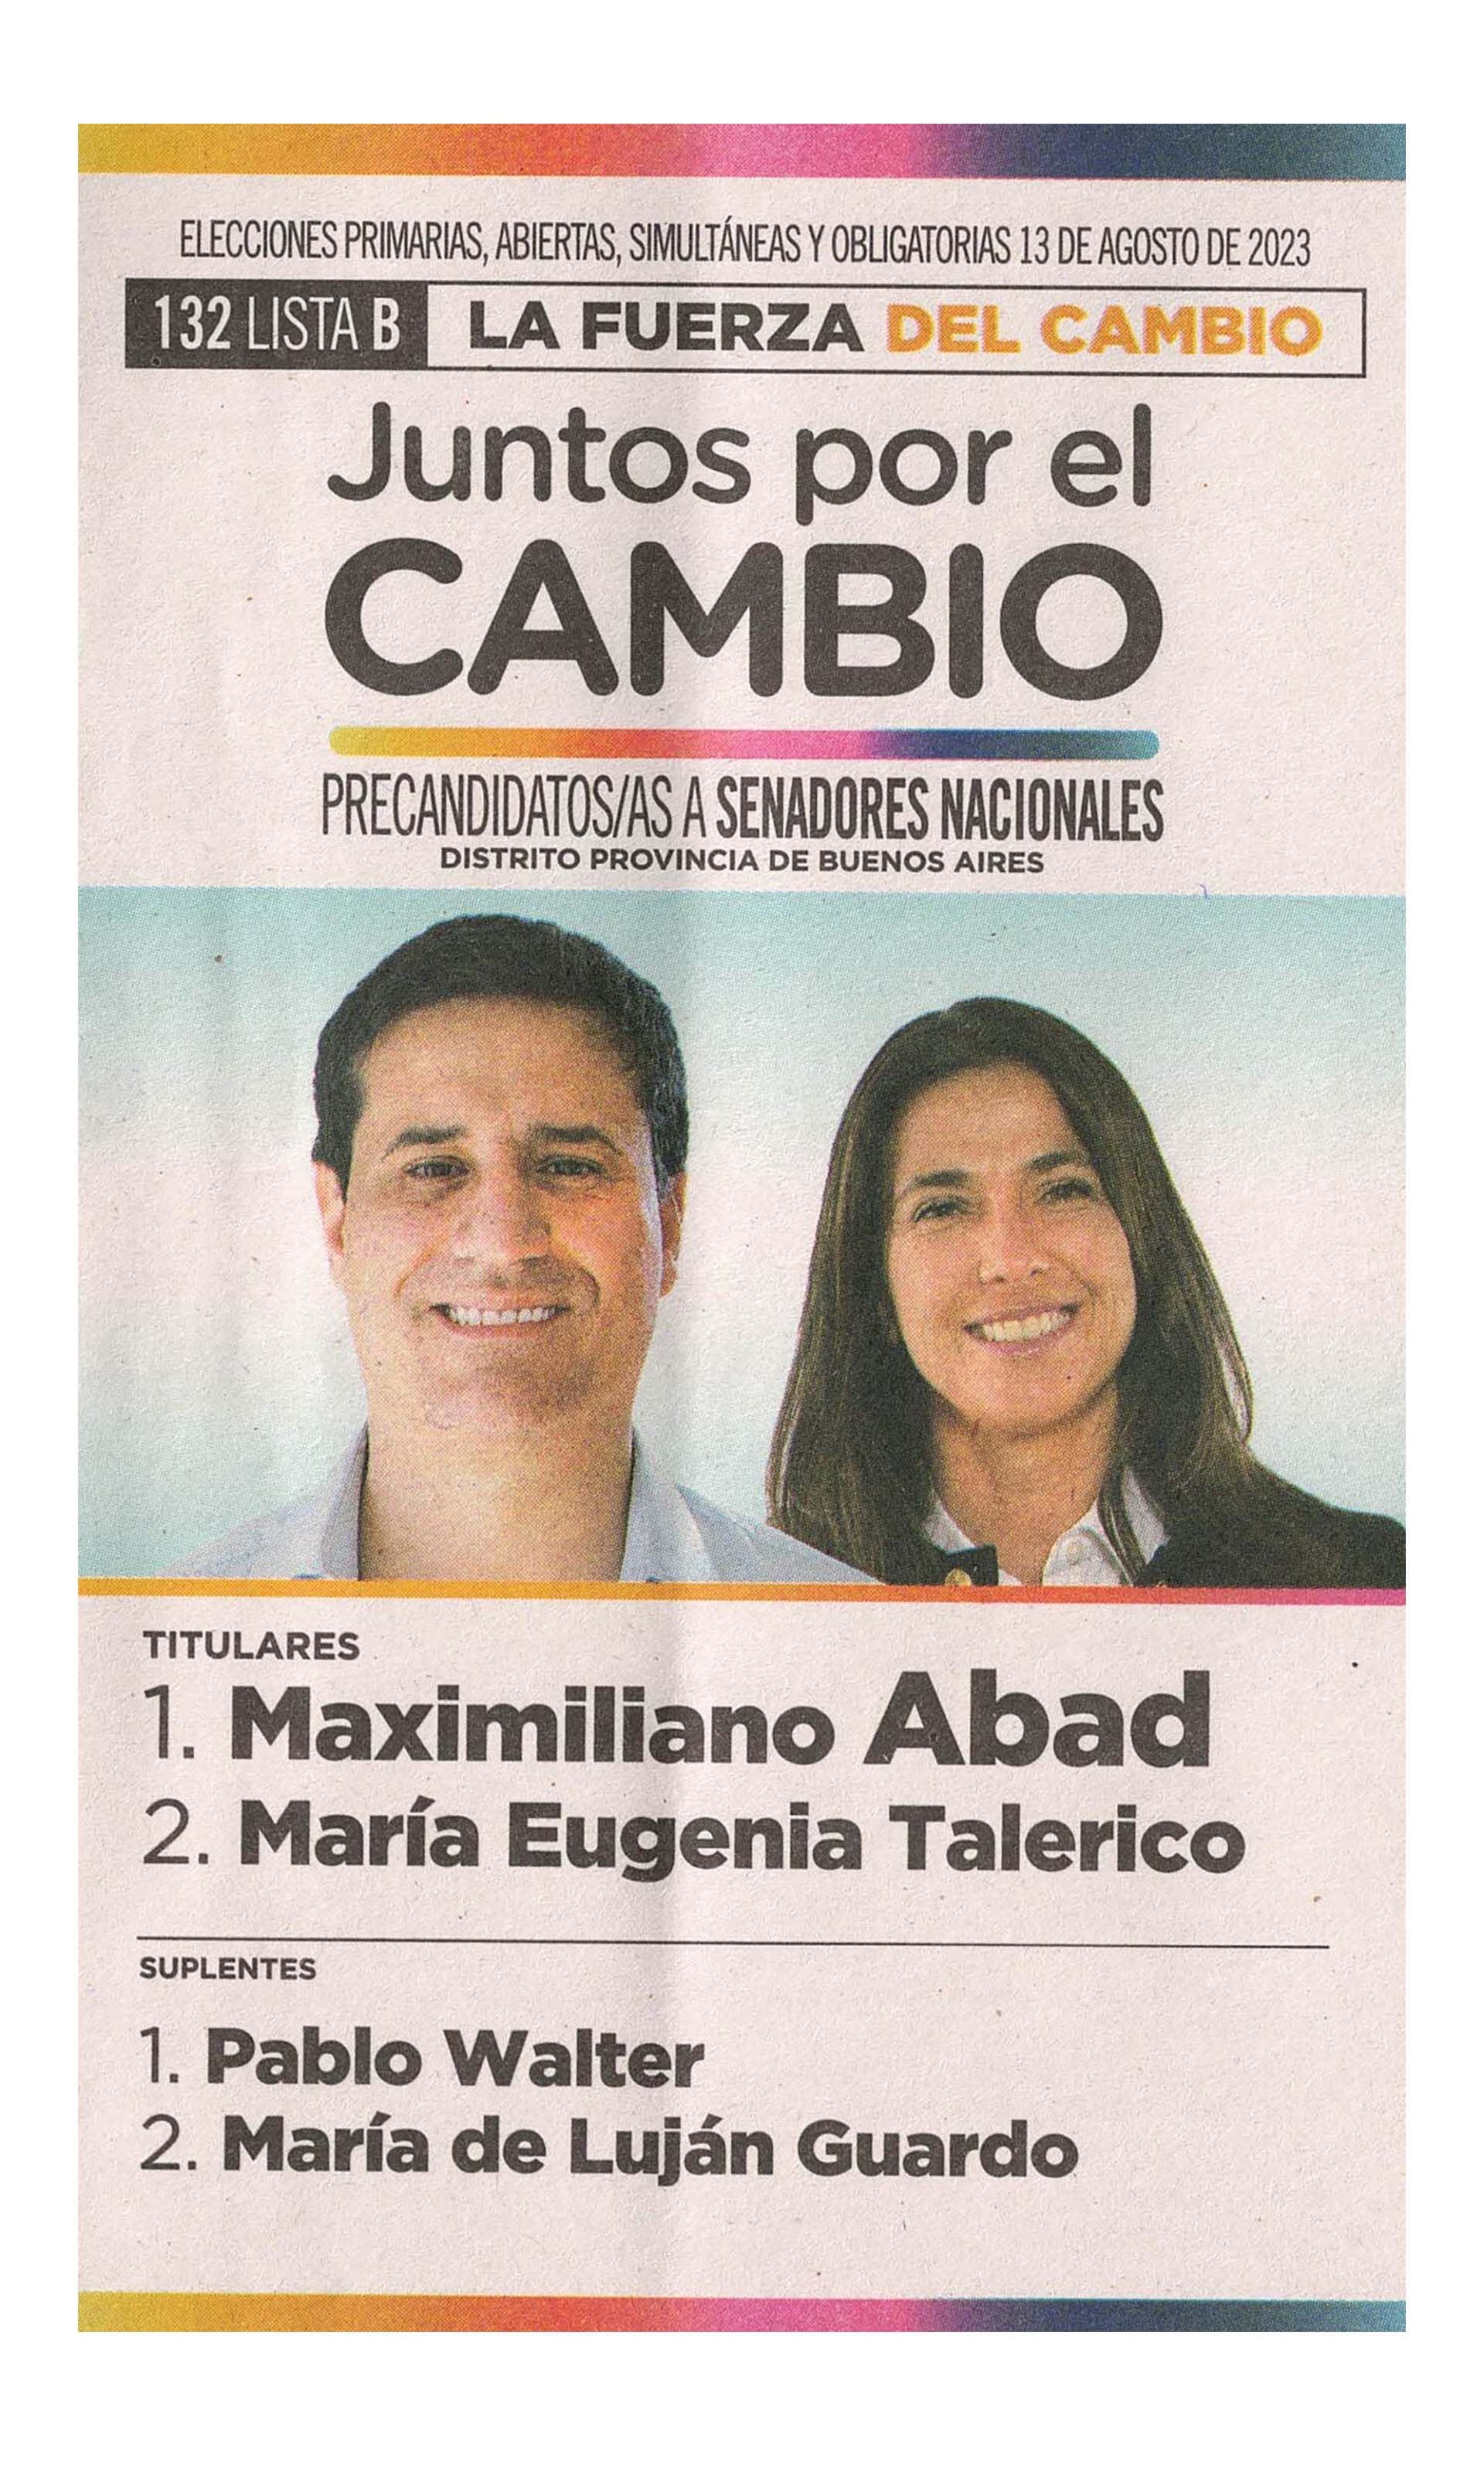 La boleta oficial de Maximiliano Abad de precandidatos a senadores nacionales de Buenos Aires